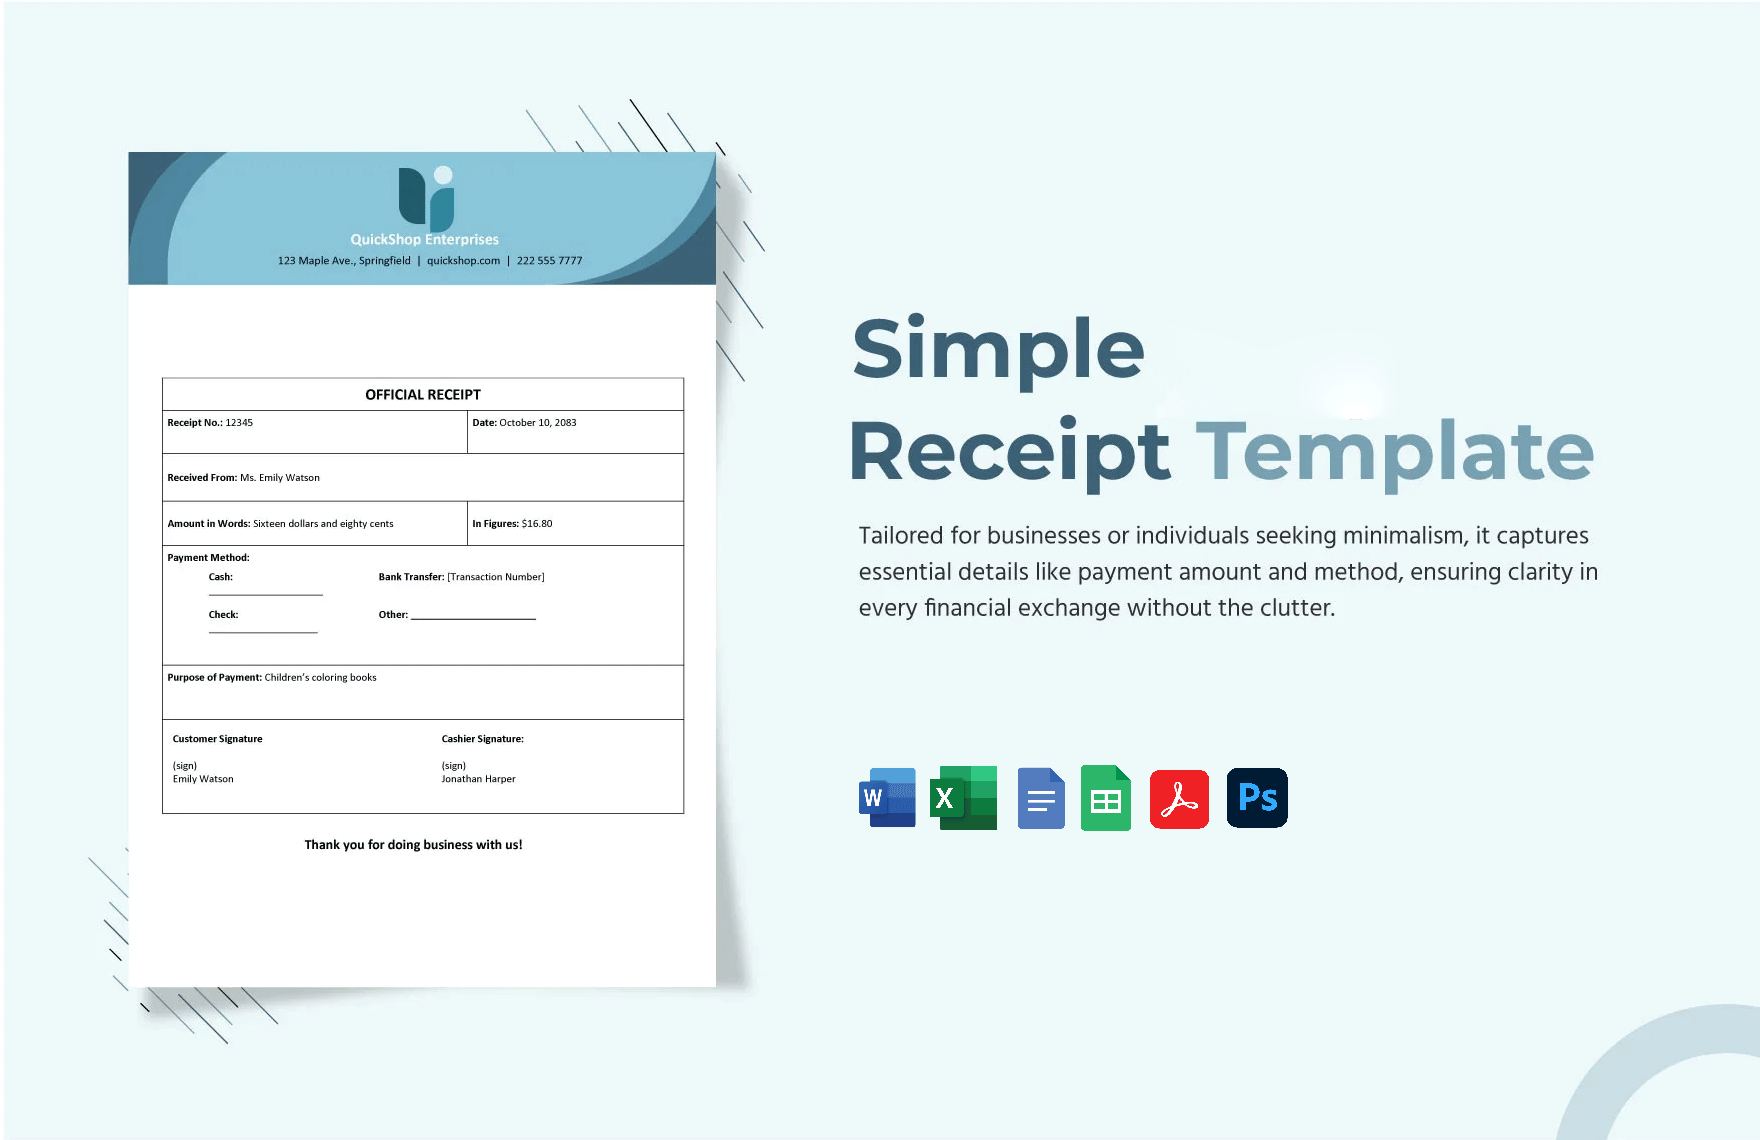 Simple Receipt Template